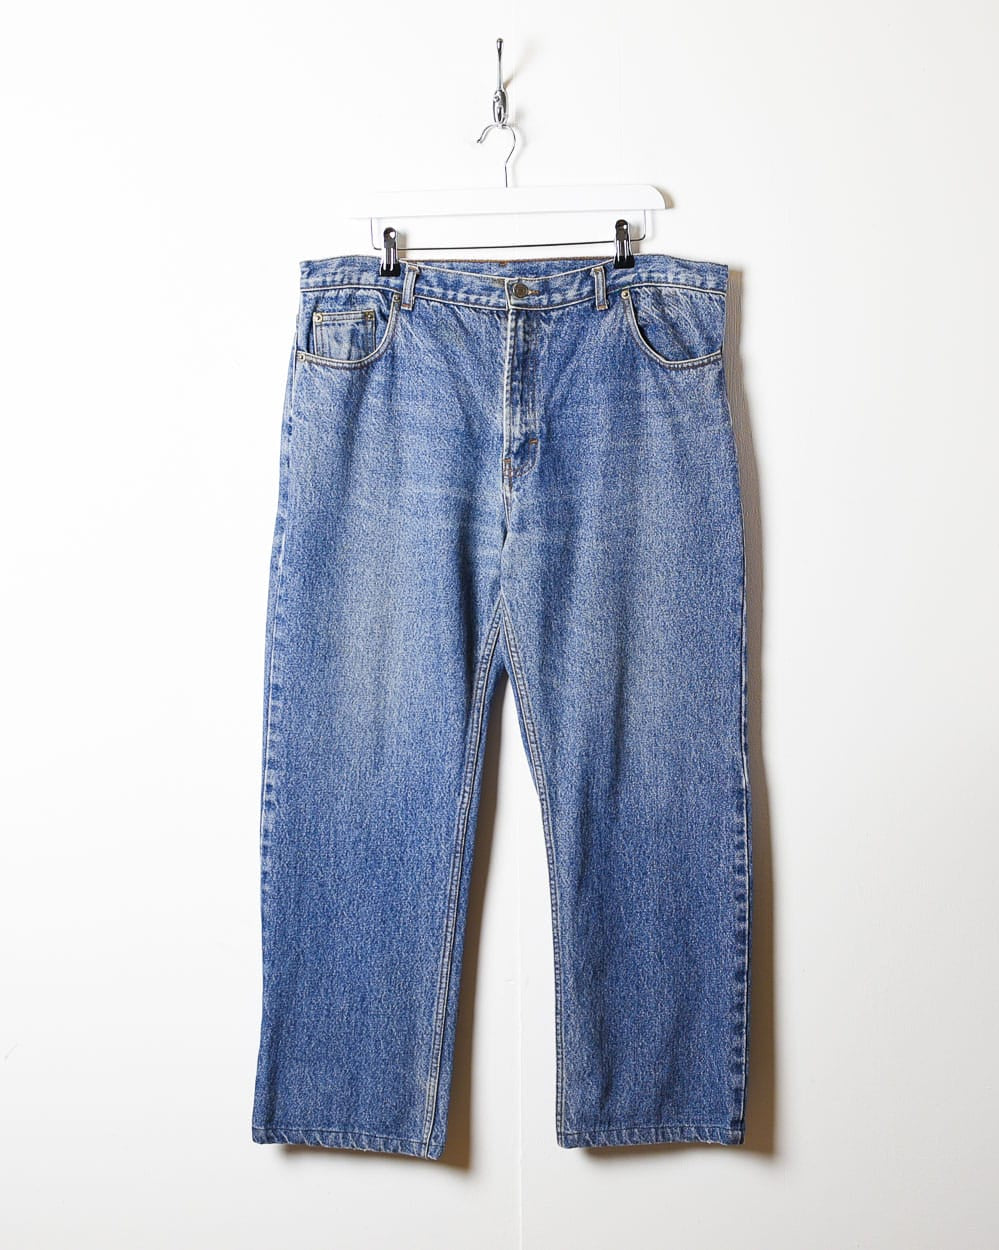 Blue Levi's 501 Jeans - W38 L28